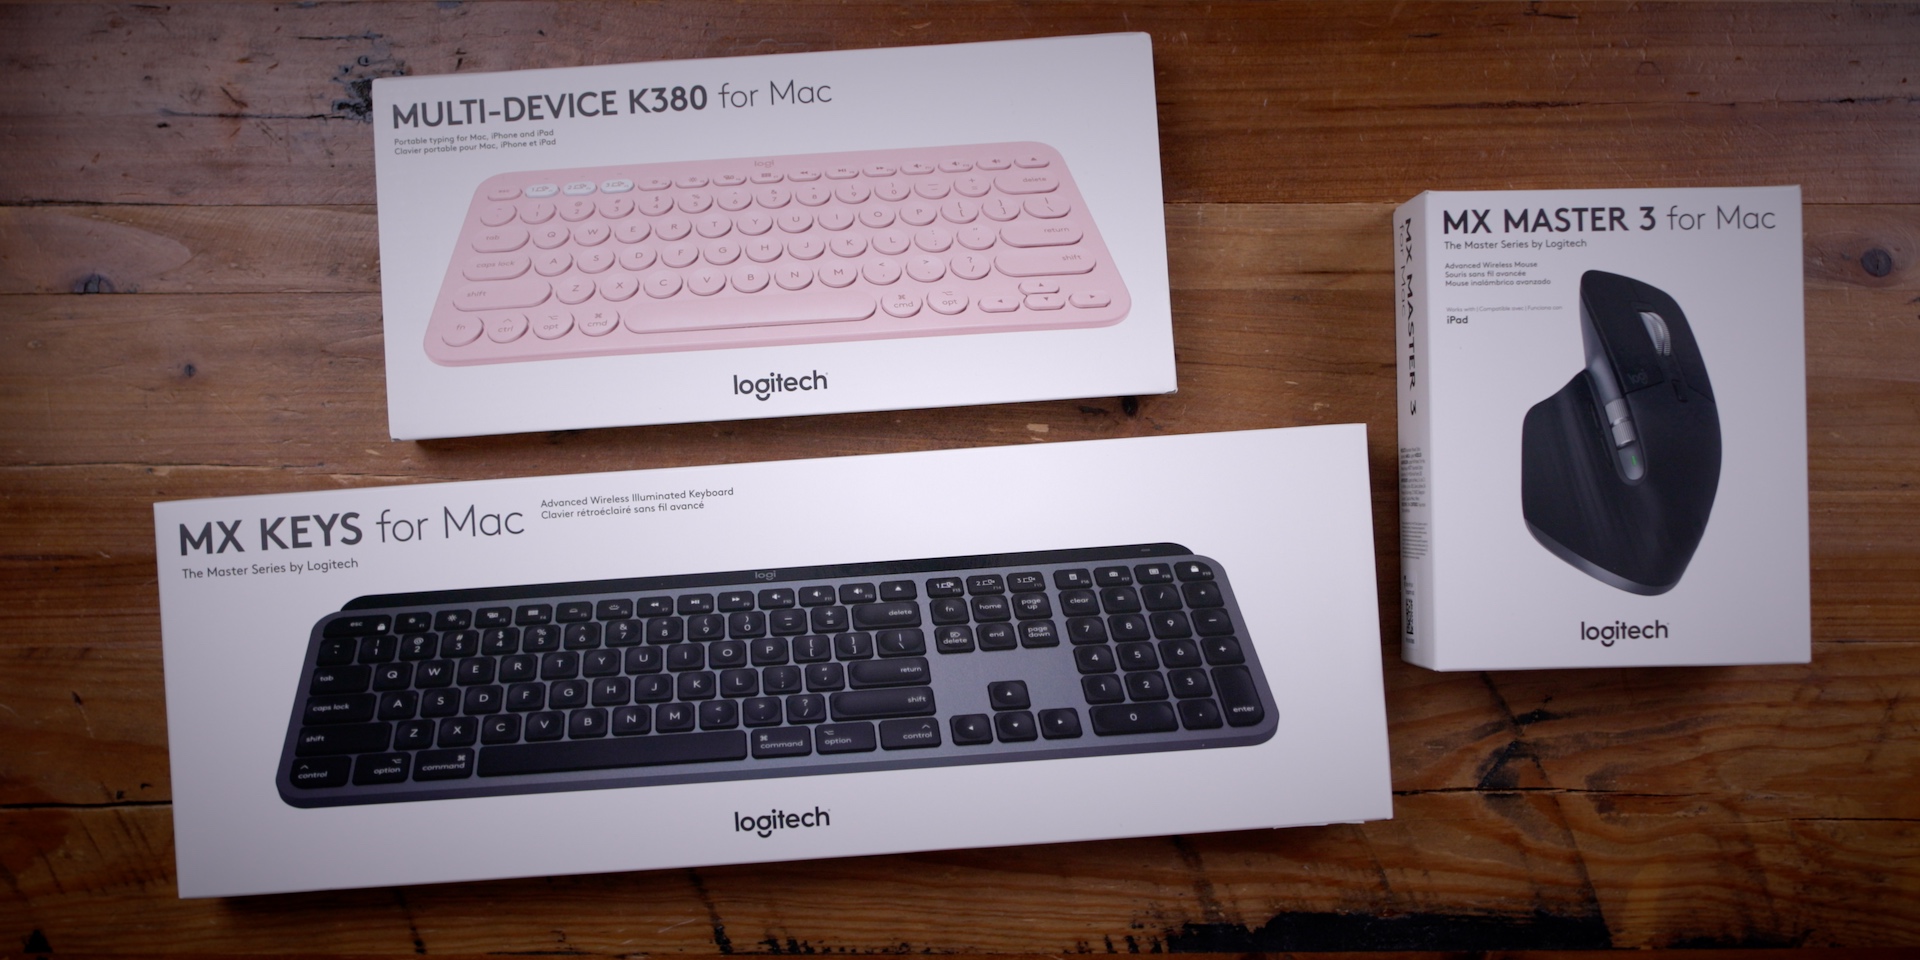 deres Fancy lån Hands-on: Logitech MX Master 3, MX Keys, and K380 keyboard - 9to5Mac